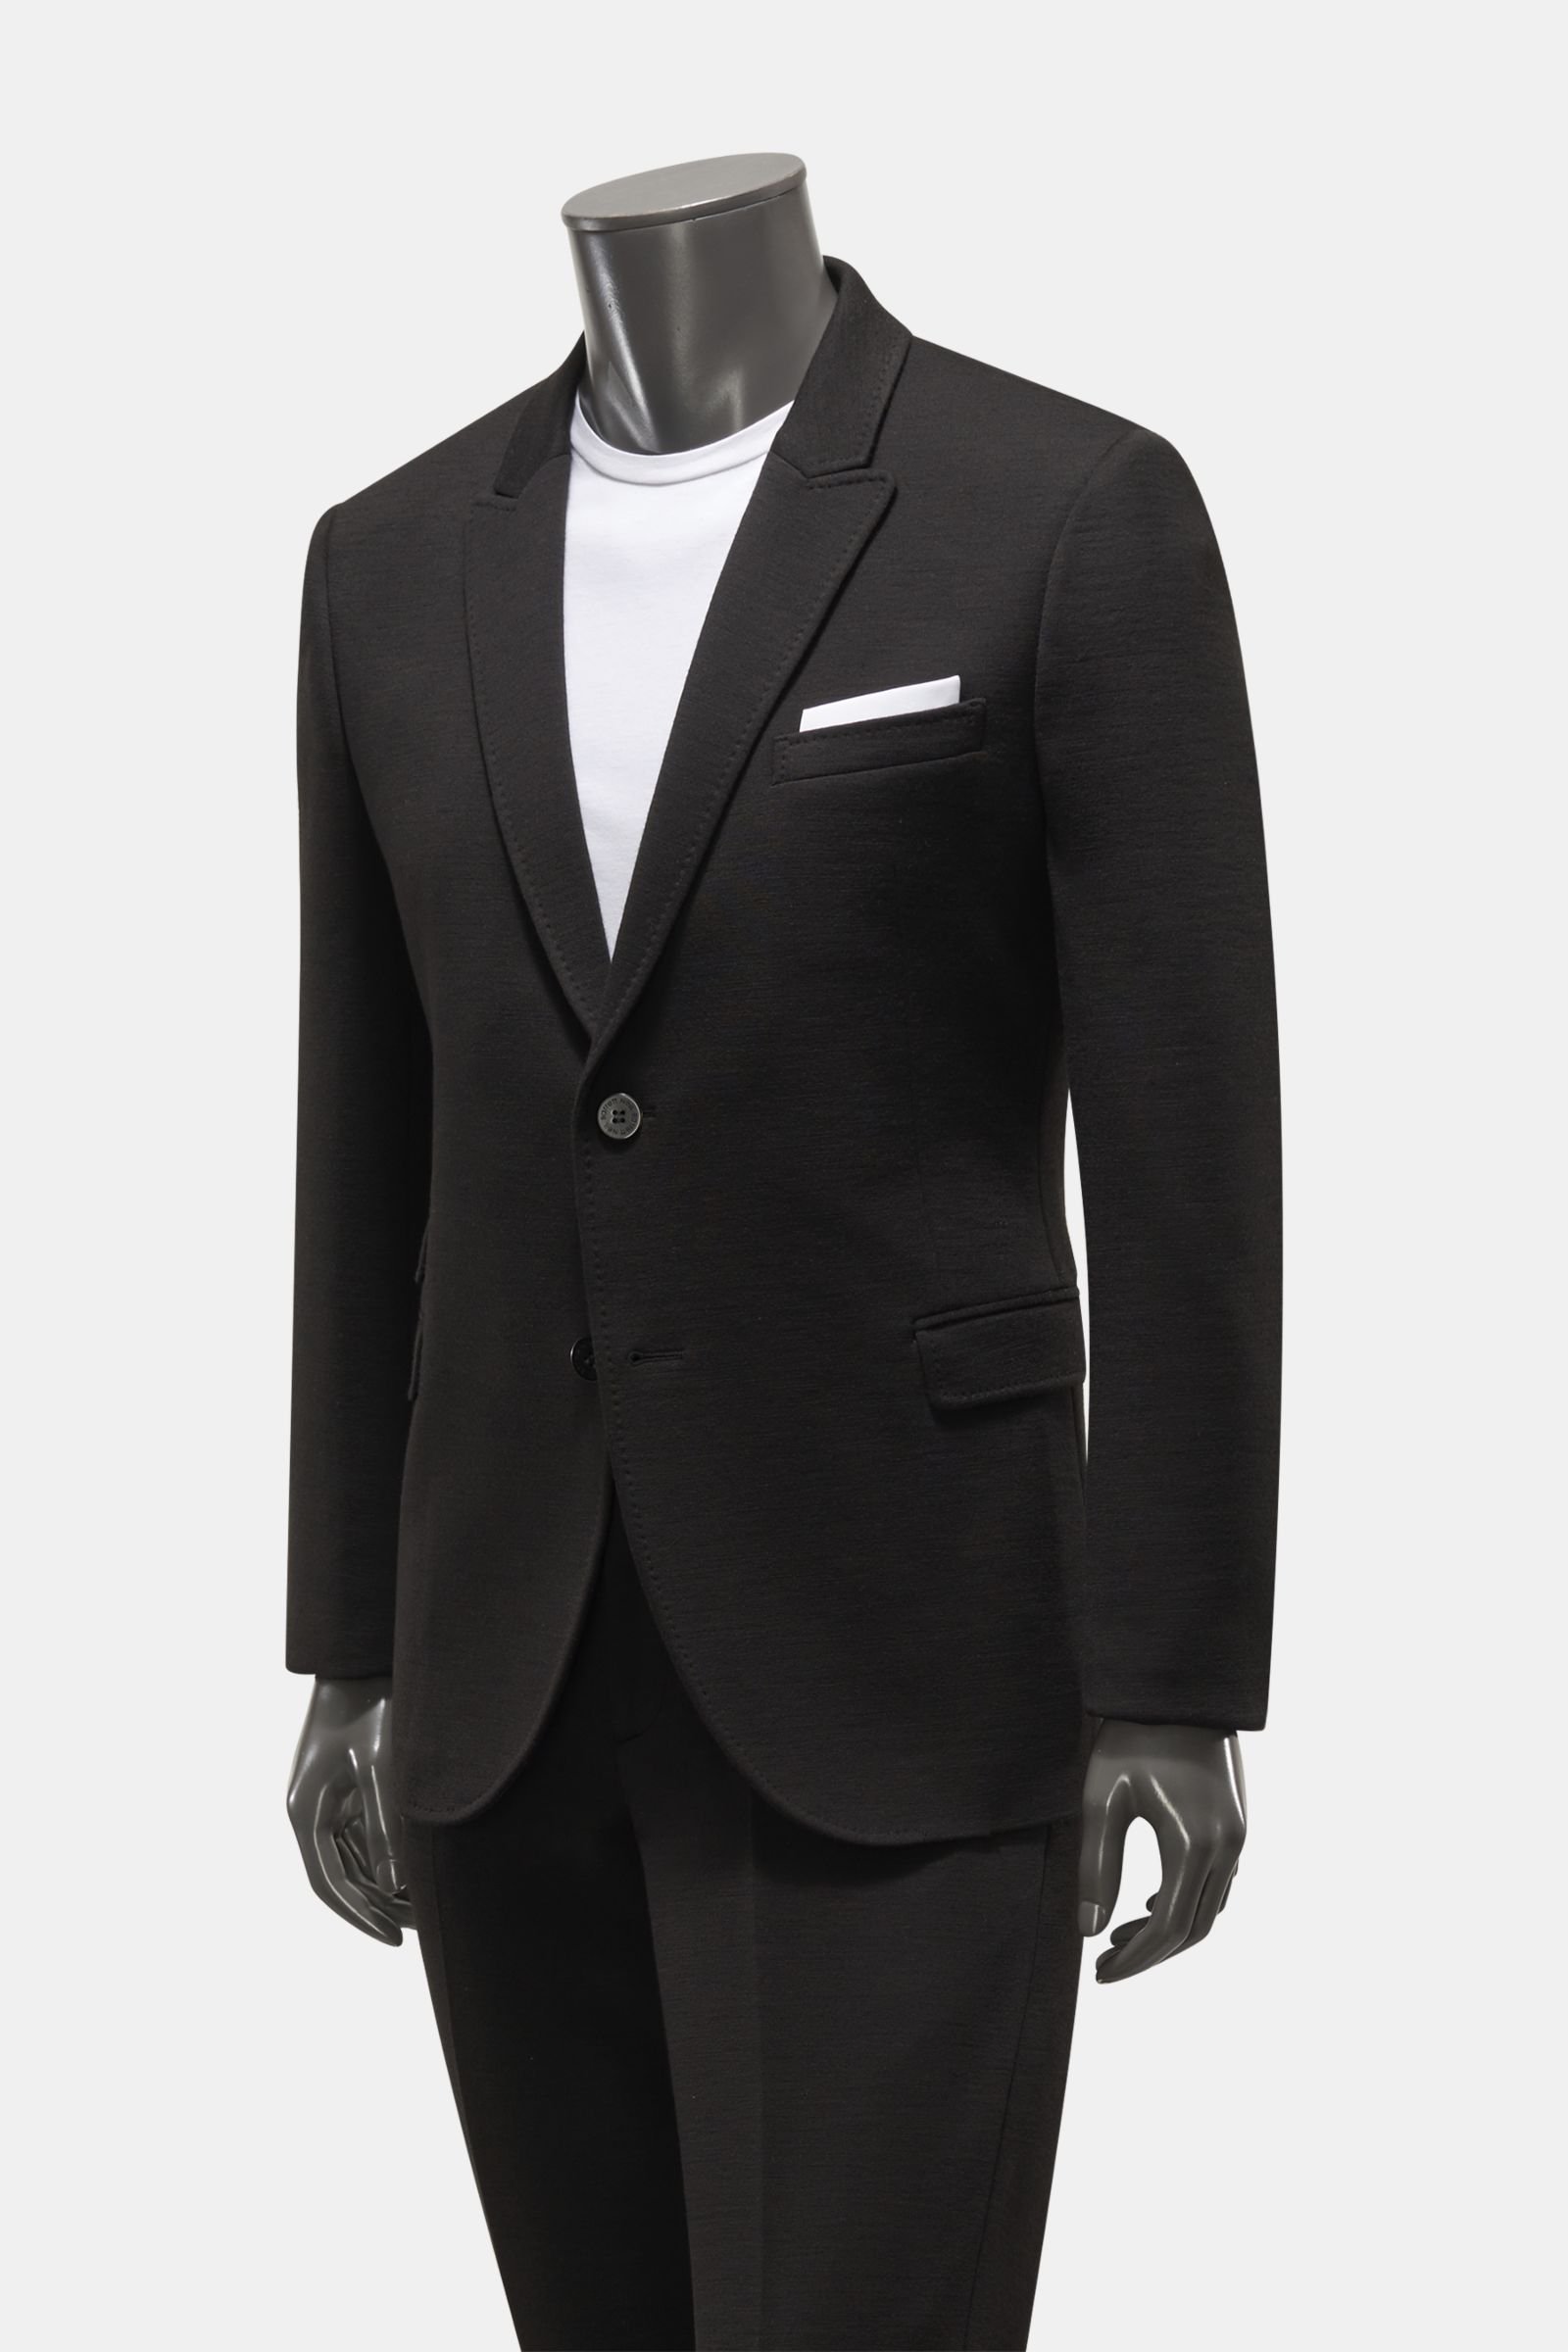 Jersey suit black